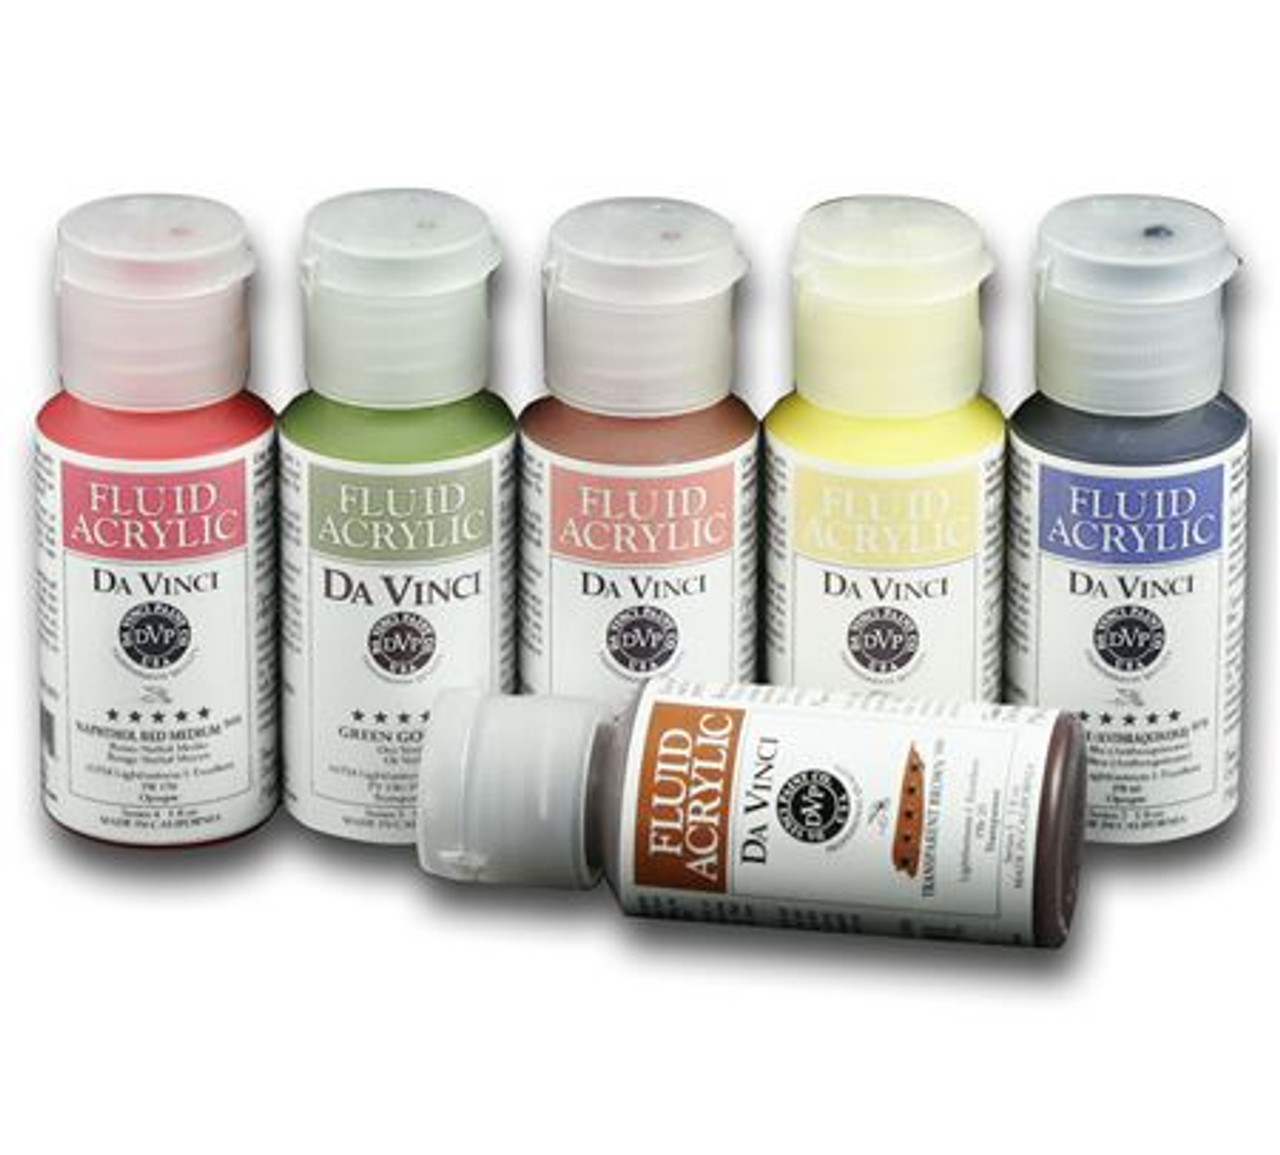 Da Vinci Carbon Black Artist Fluid Acrylic Paint – 16oz